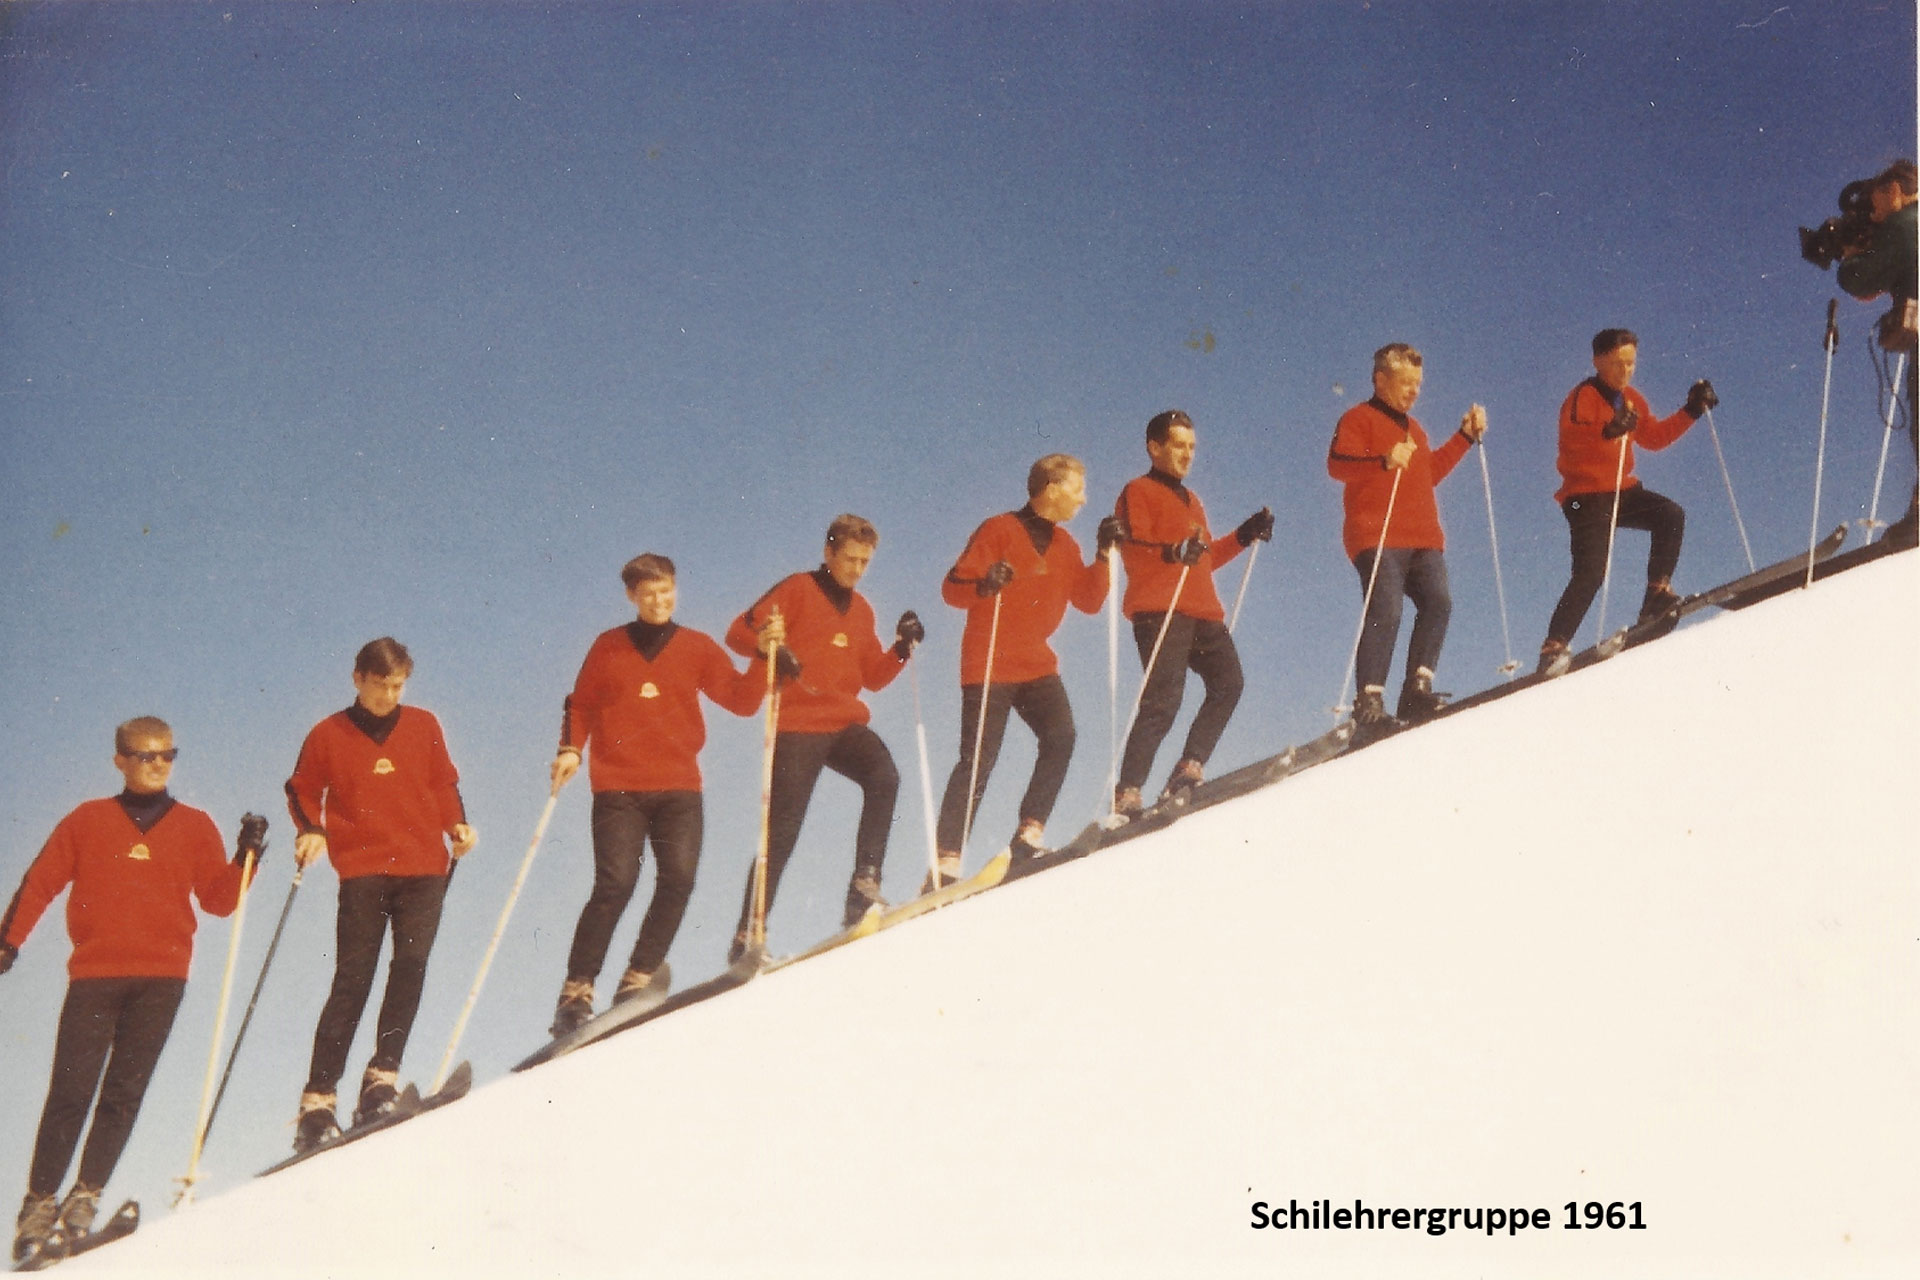 Geigenbühel-Skilehrer-1961